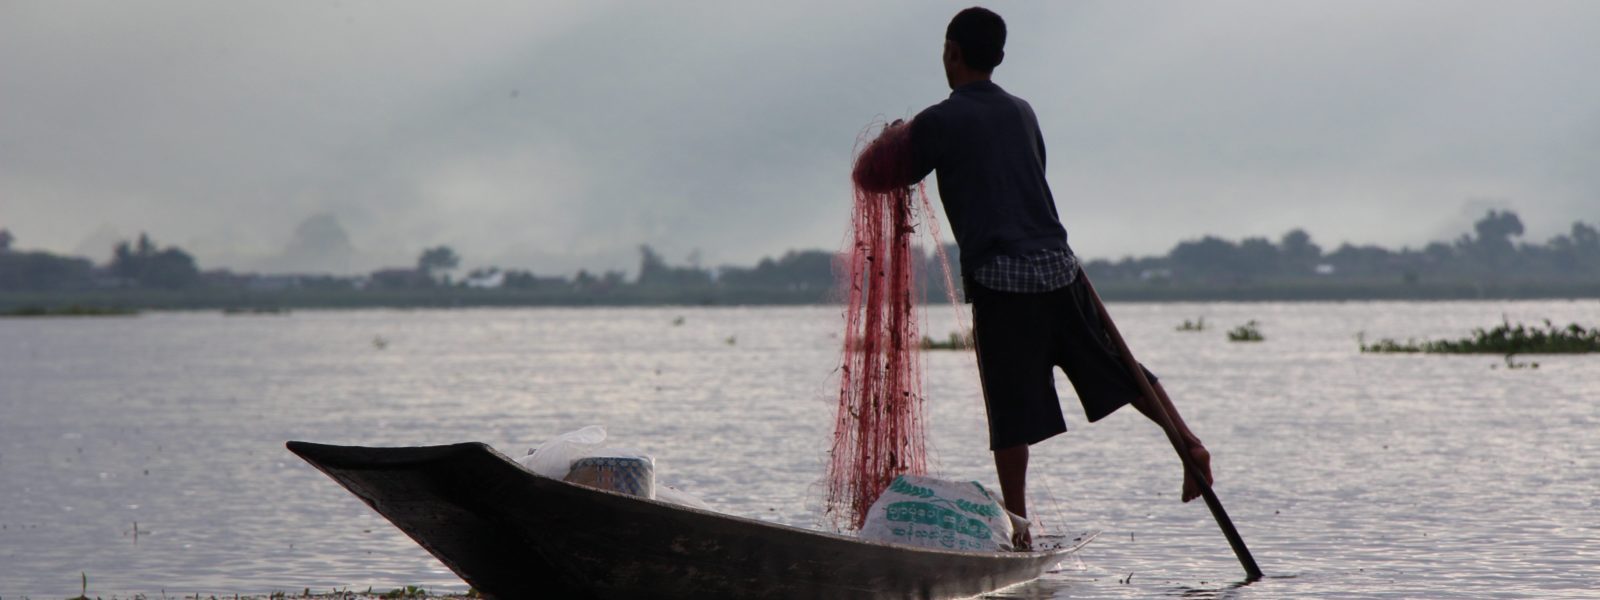 Inle Lake - Inthar fisherman - Myanmar - Sampan Travel